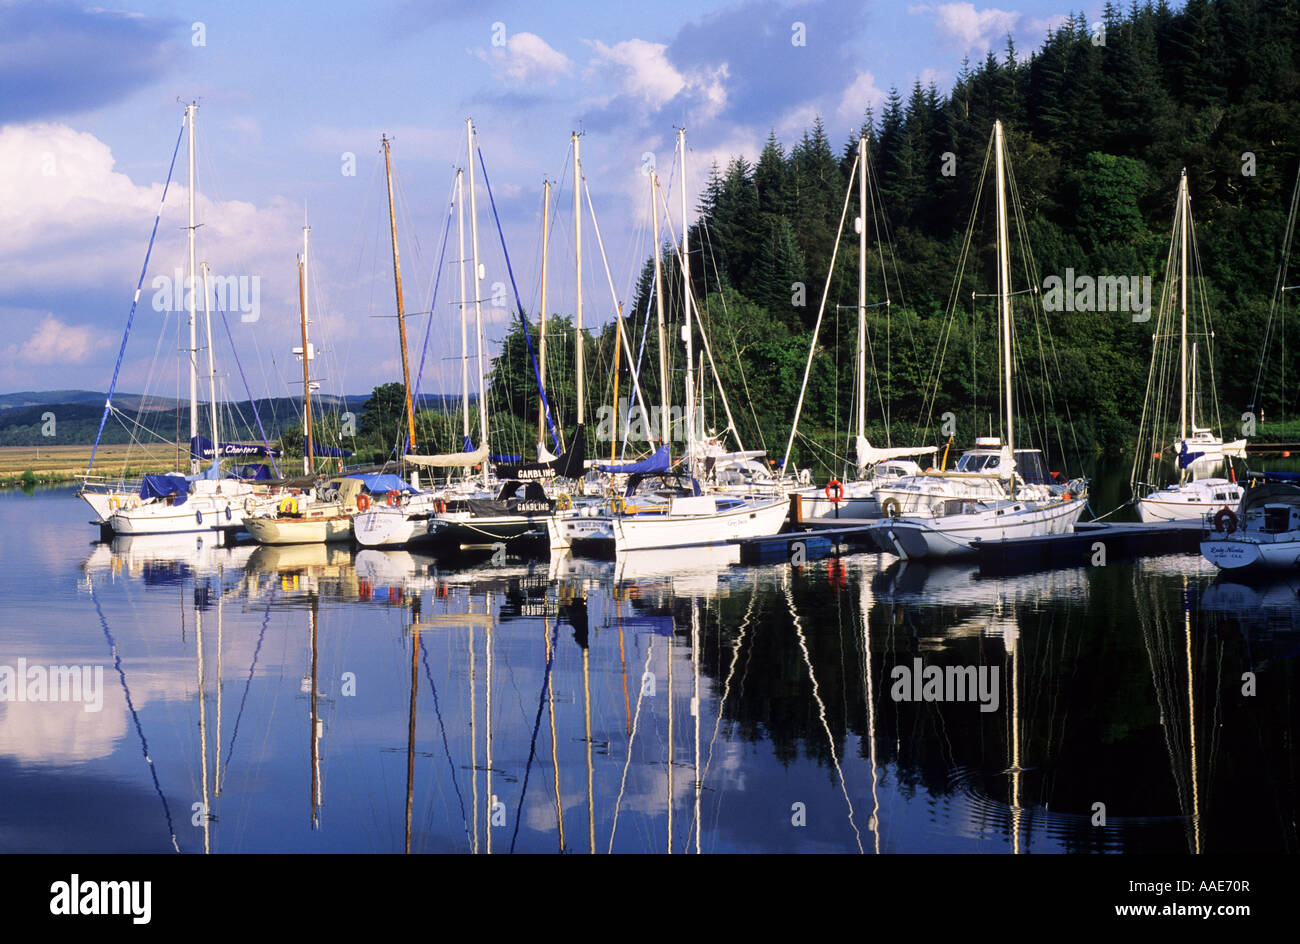 Bellanock, Crinan Canal, bateaux, yachts, à l'ouest, dans l'ouest de l'Ecosse, région de Strathclyde, Royaume-Uni, les bateaux de plaisance à flot, vacances, voyage, Banque D'Images